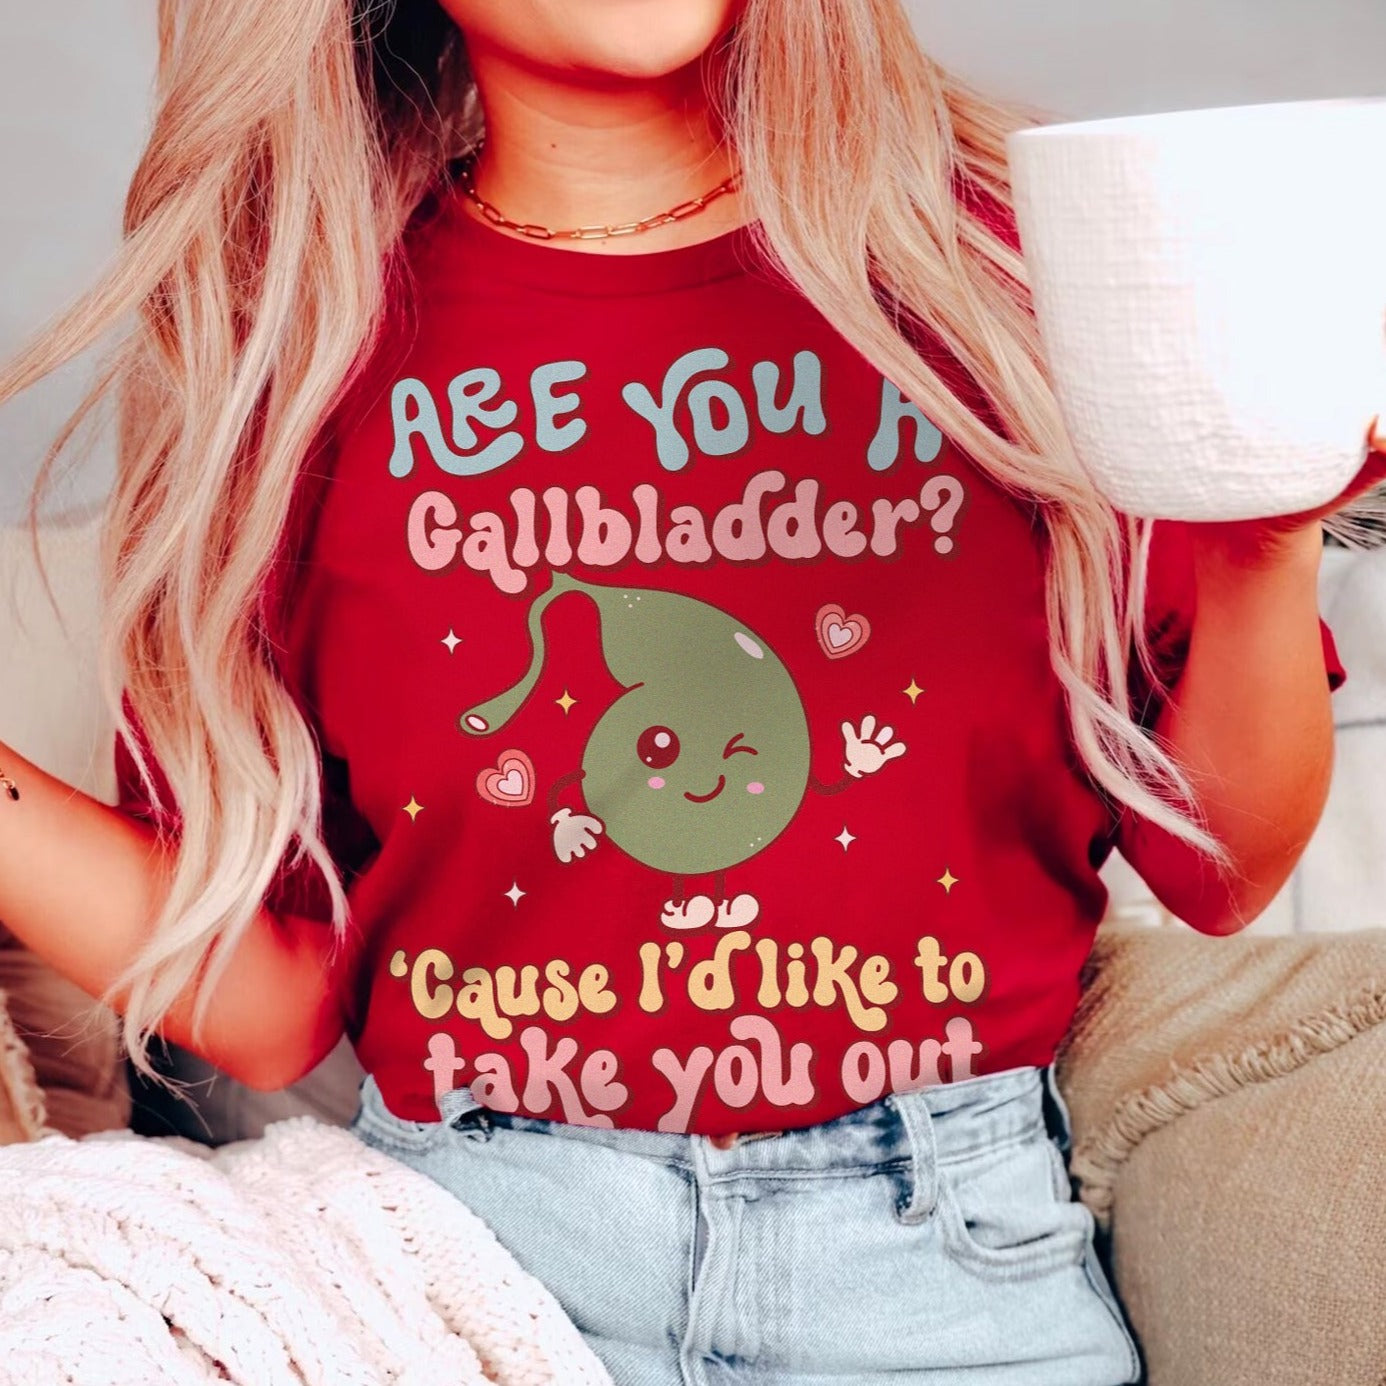 Gallbladder Valentine's Day T-Shirt